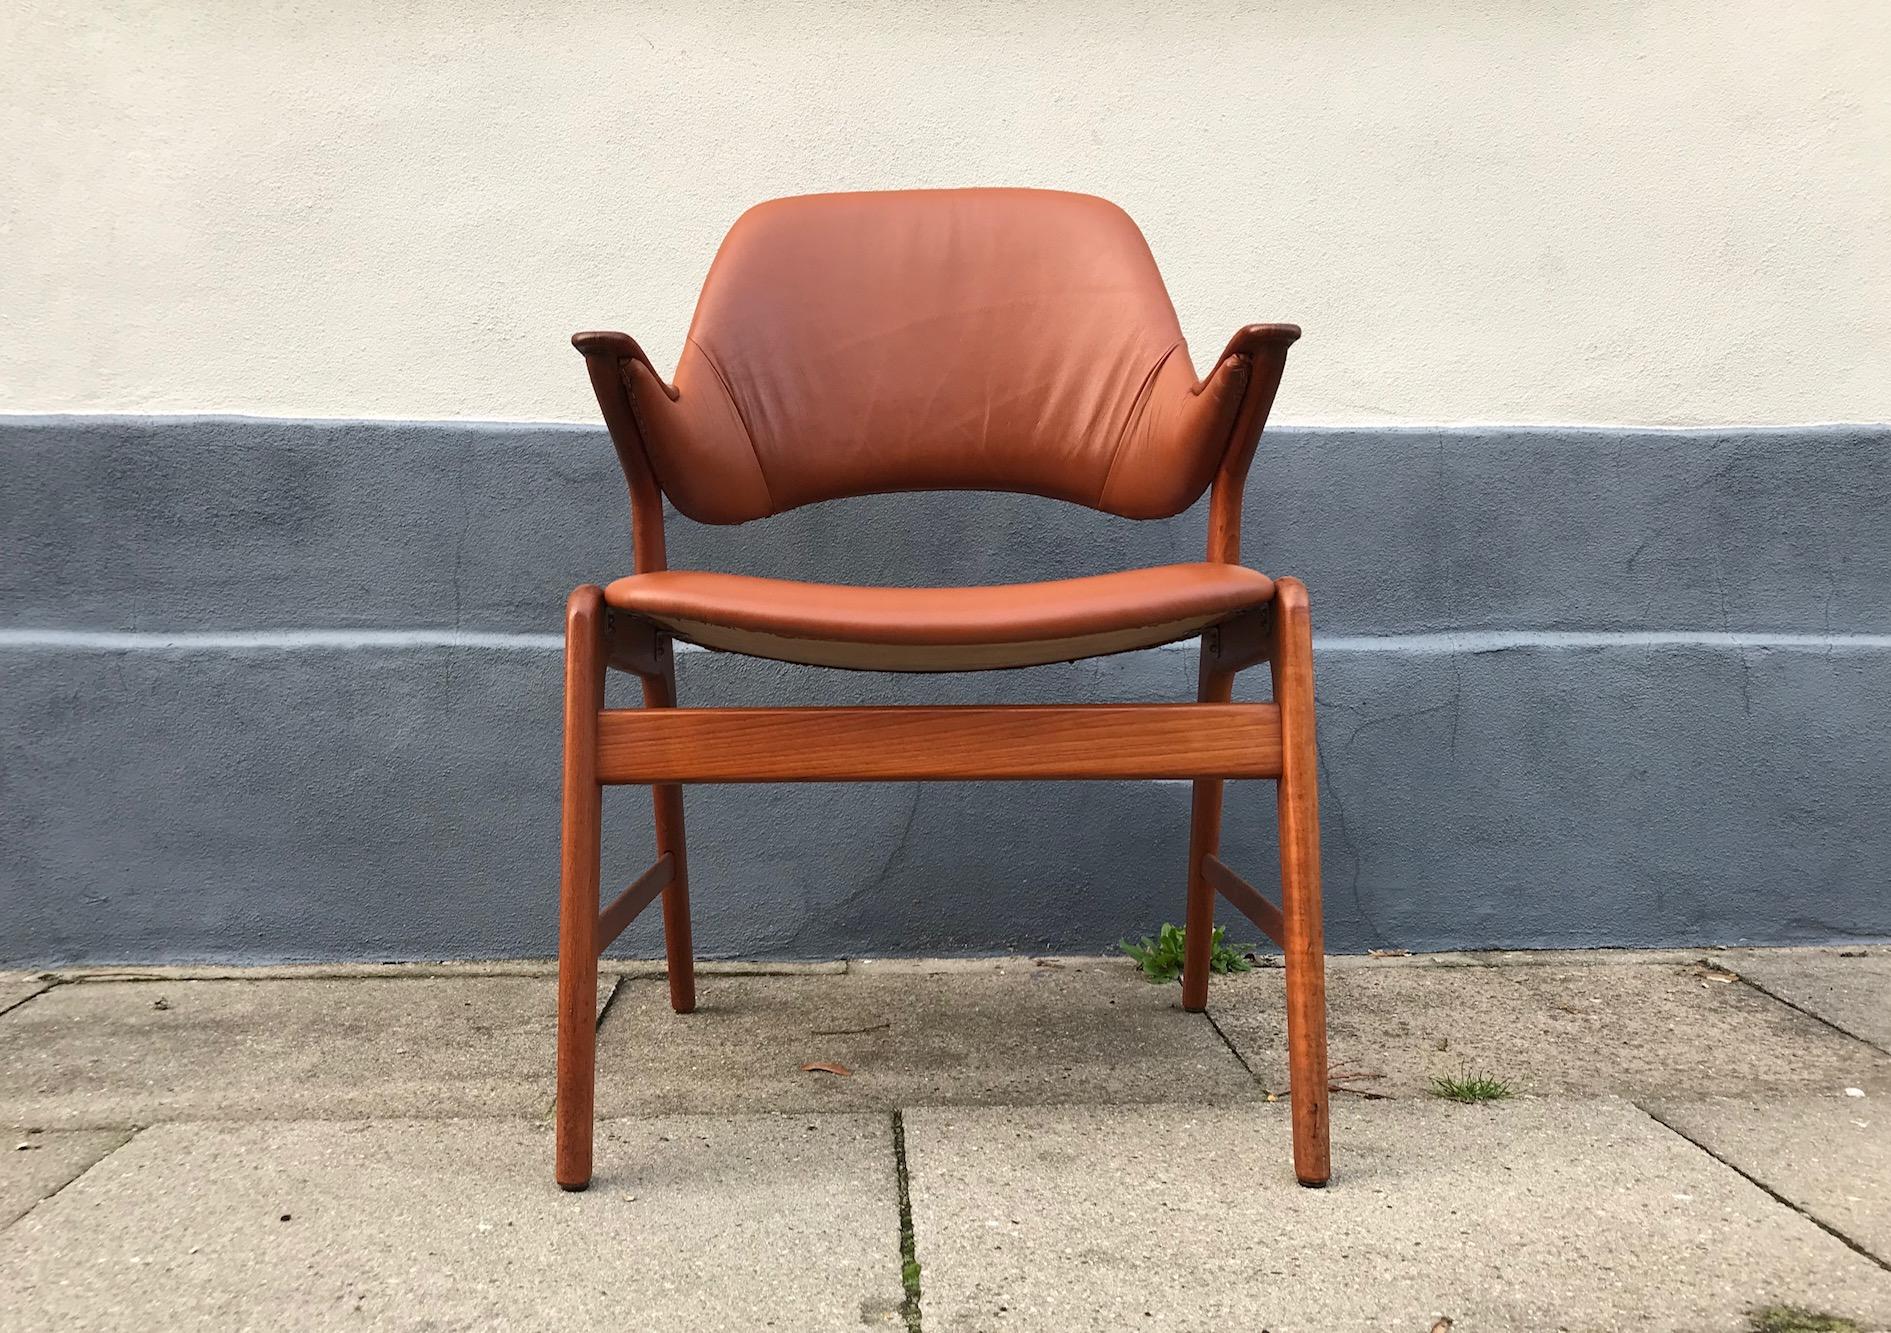 Sessel oder Lounge Chair aus massivem Teakholz, kürzlich mit braun gegerbtem Anilinleder gepolstert. Die Armlehnen sind aus handgeschliffenem Eichenholz gefertigt, das mit Nägeln versehen ist. Er wurde in den frühen 1960er Jahren von N. A. Jørgensen